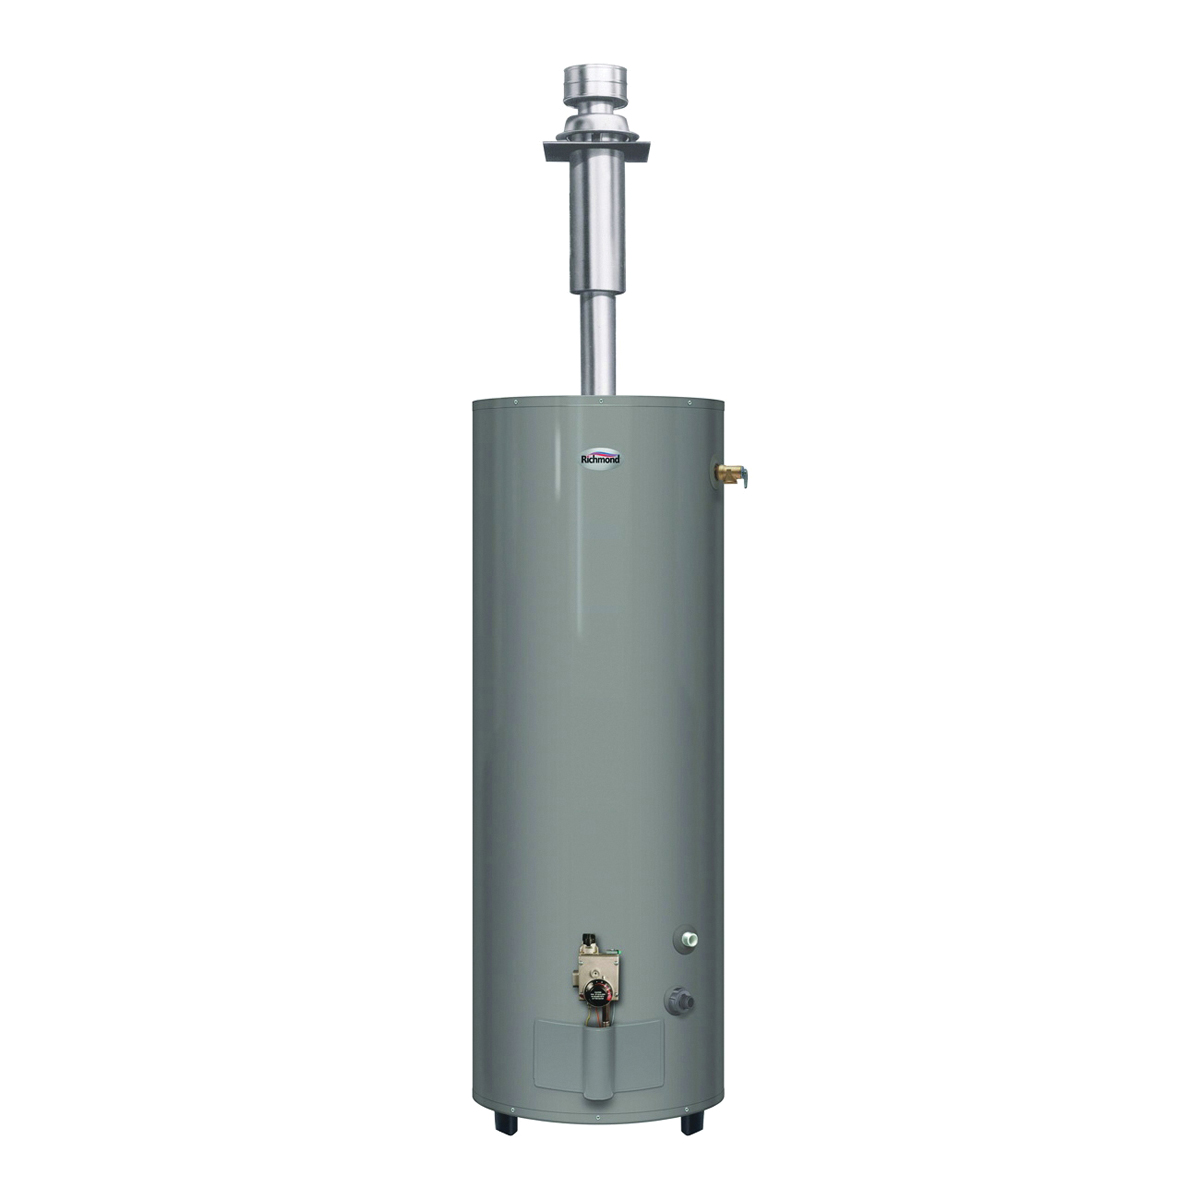 Essential Series MVR40DV3 Gas Water Heater, LP, Natural Gas, 40 gal Tank, 58 gph, 30000 Btu/hr BTU